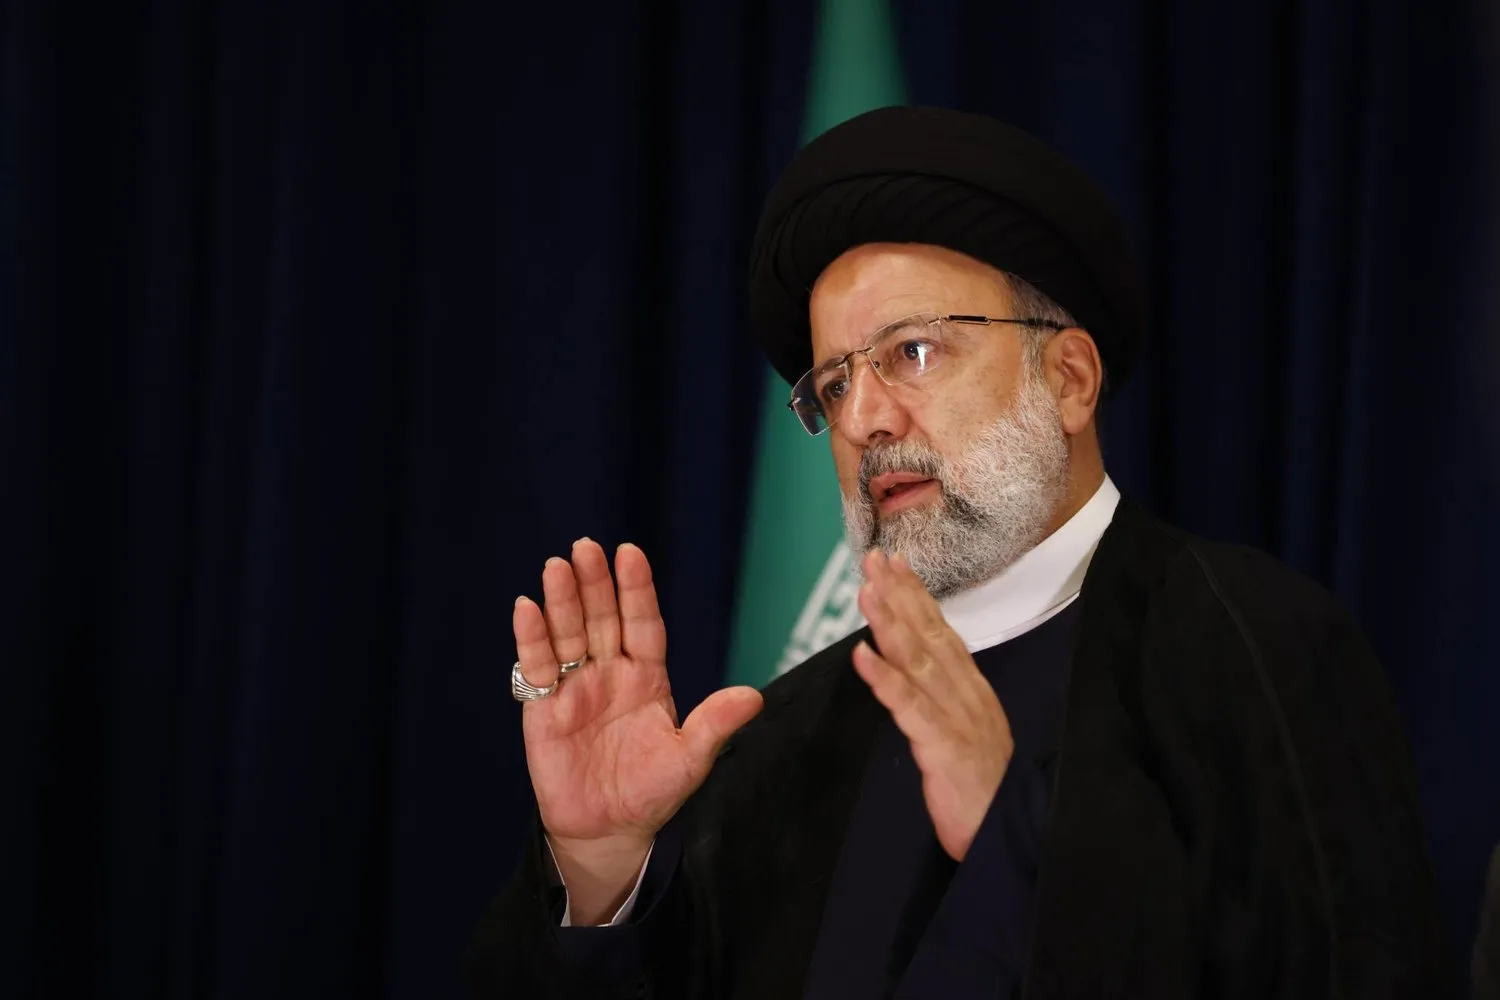 رئيس إيران يتفاخر بعمليات "الوعد الصادق النوعية والقاصمة" ضد "إسرائيل"